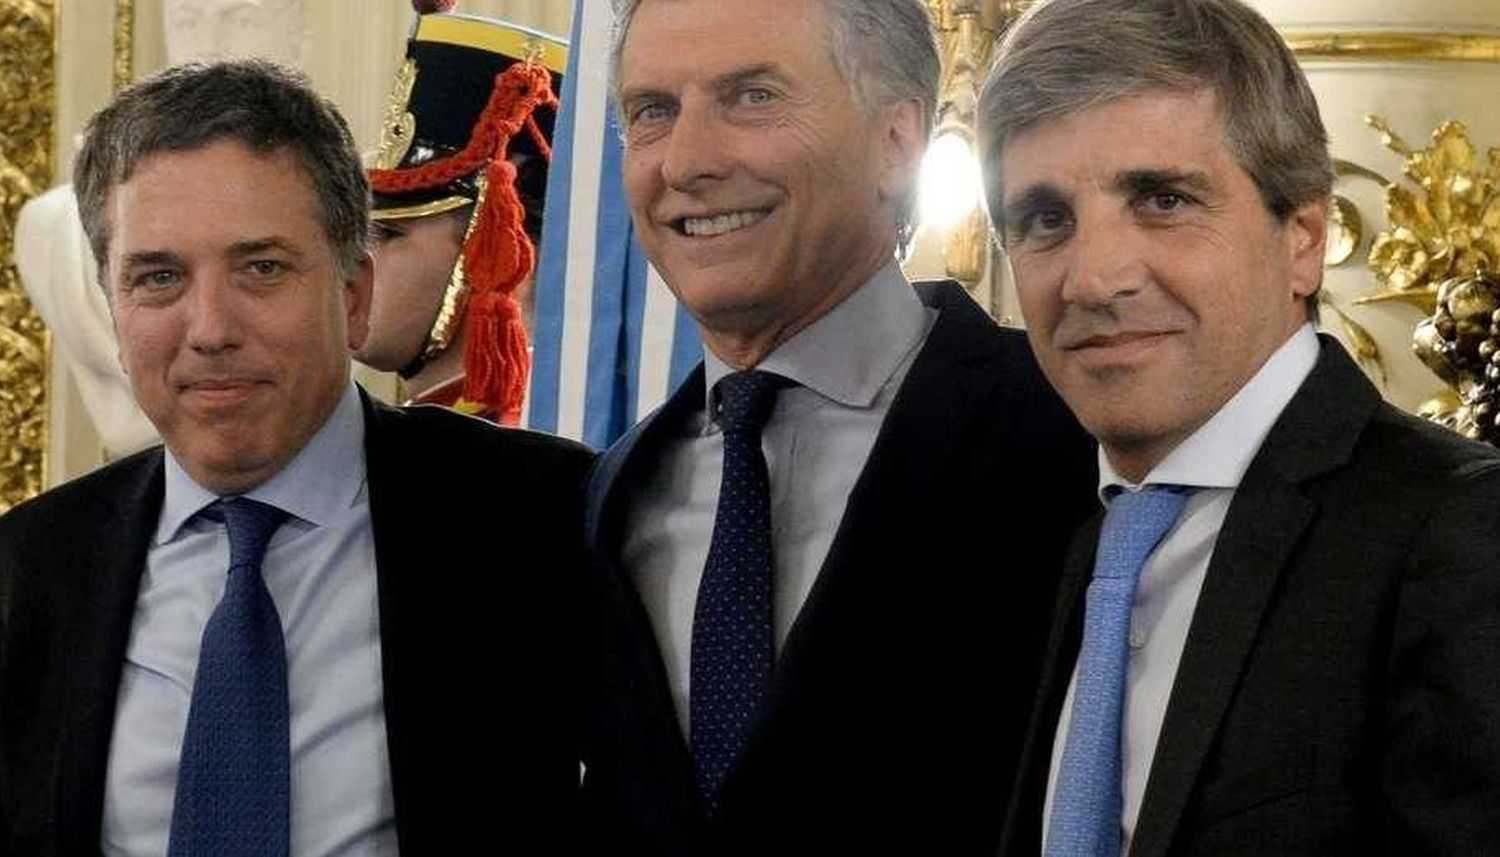 <p>Dujovne, Macri y Caputo, el trío de la deuda</p>